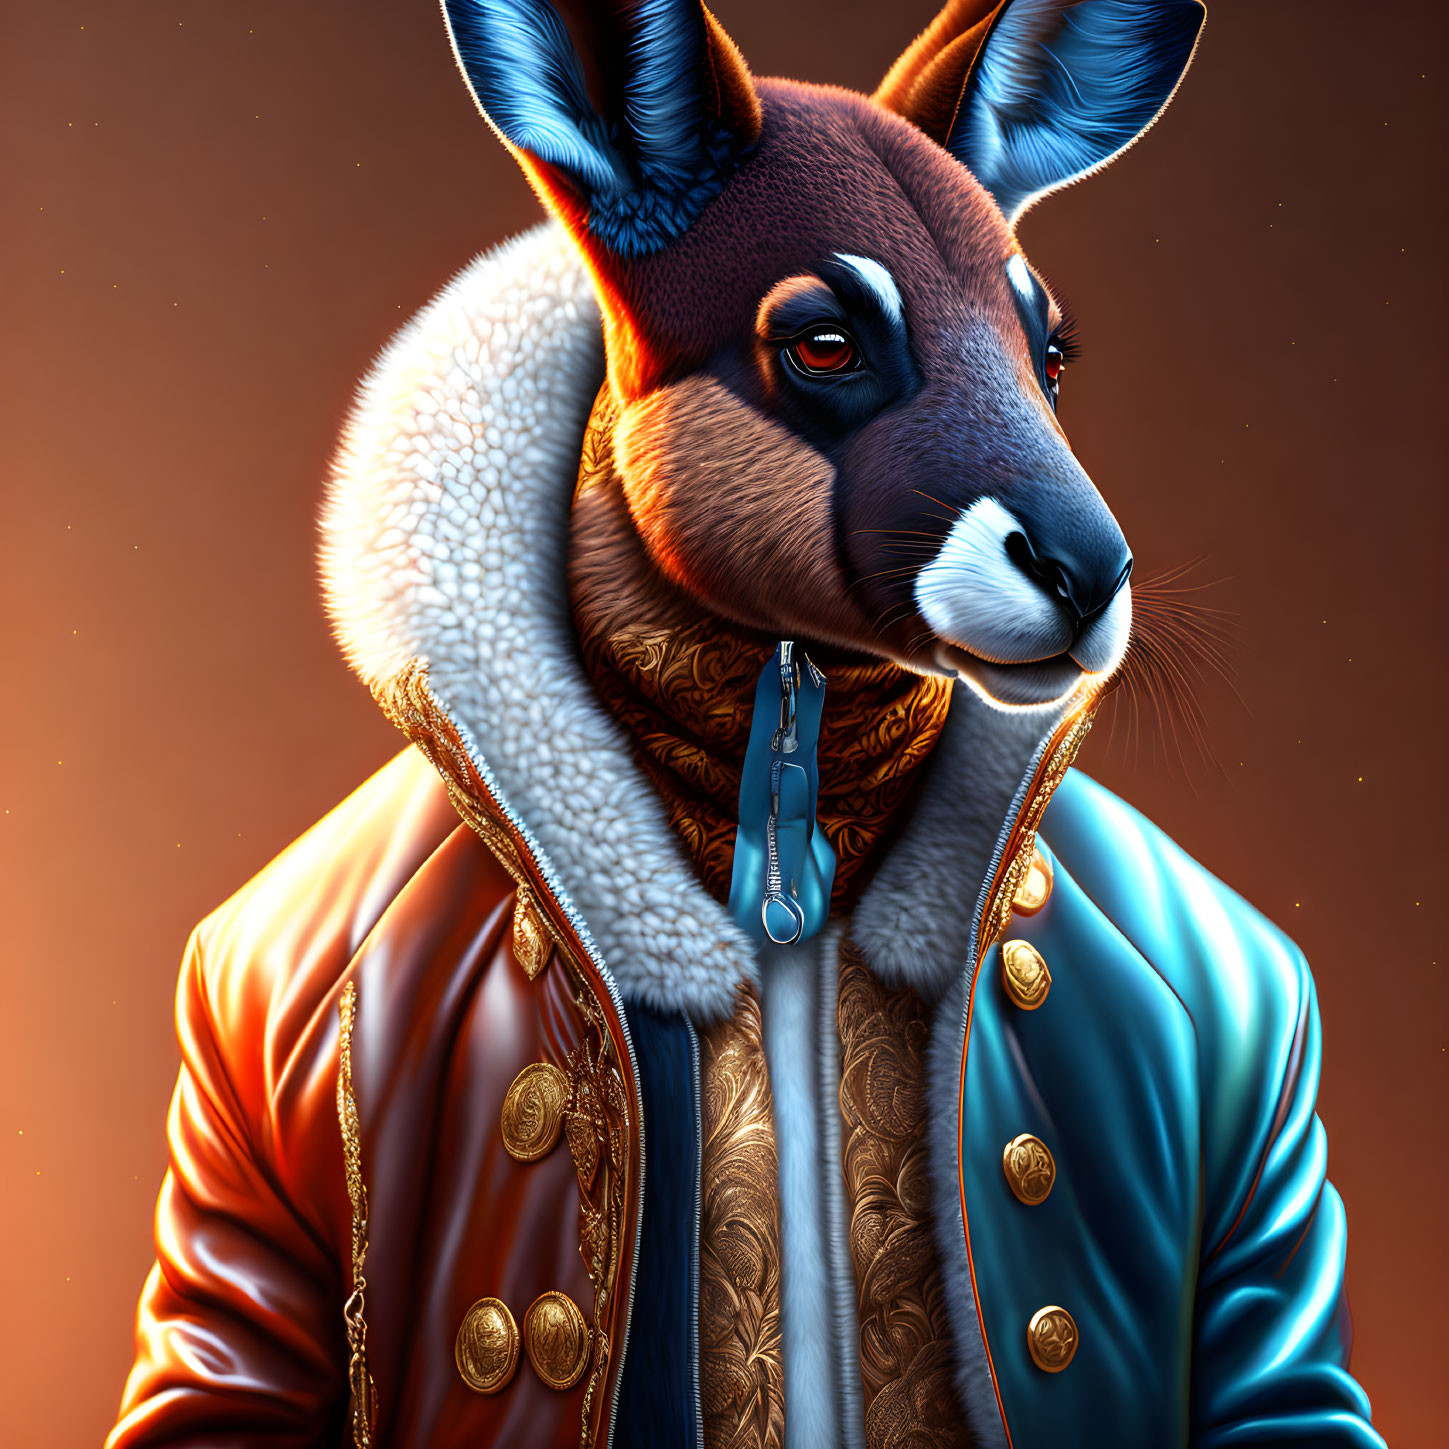 Anthropomorphic kangaroo in stylish leather jacket on warm background